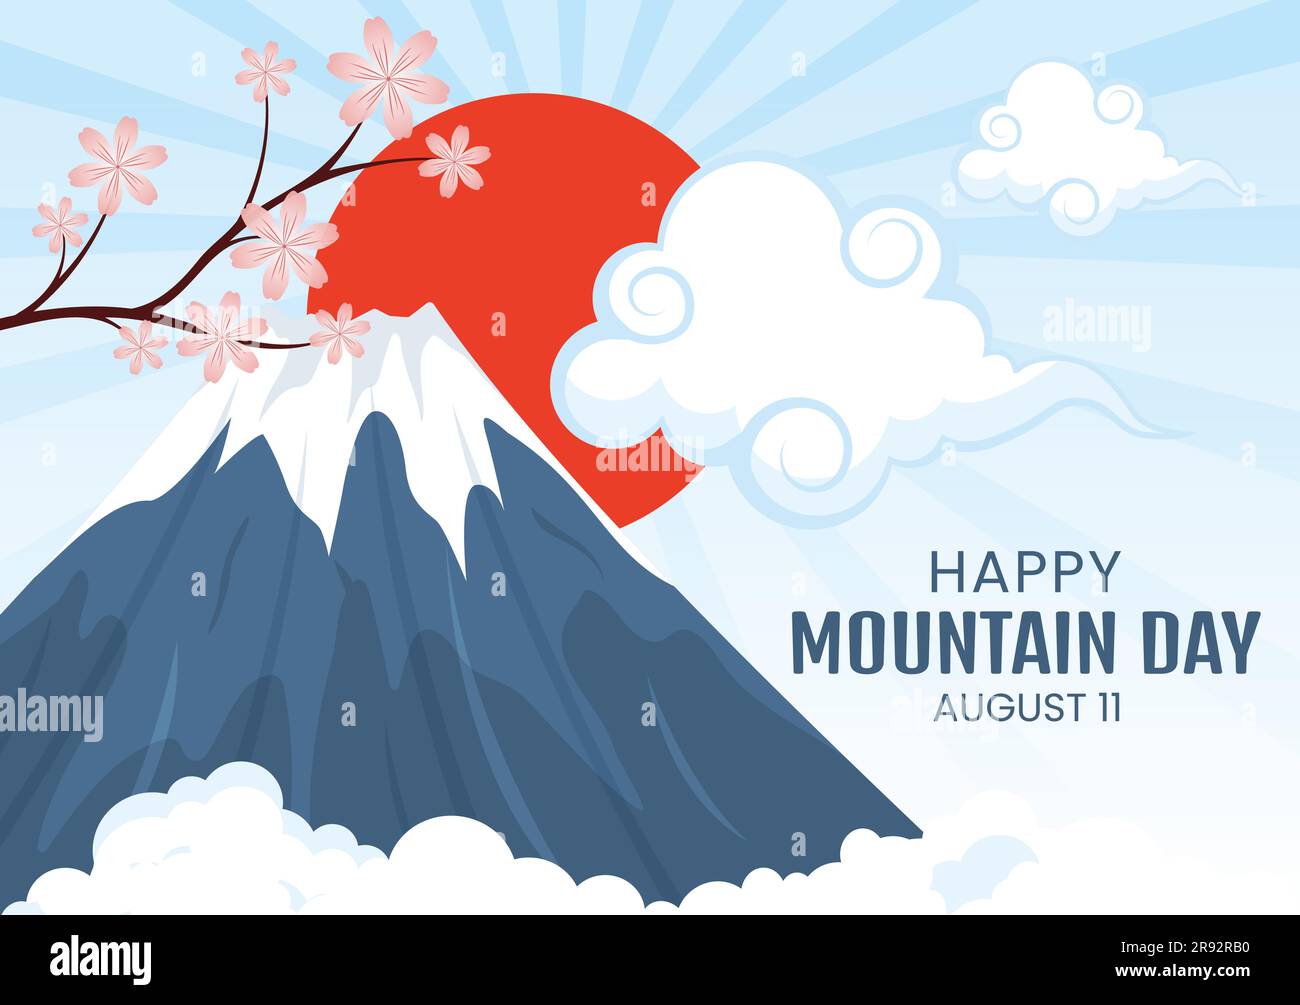 Mountain Day in Japan Vector Illustration am 11. August mit Mount Fuji und Sakura Flower Background in Flat Cartoon handgezeichnete Vorlagen Stock Vektor